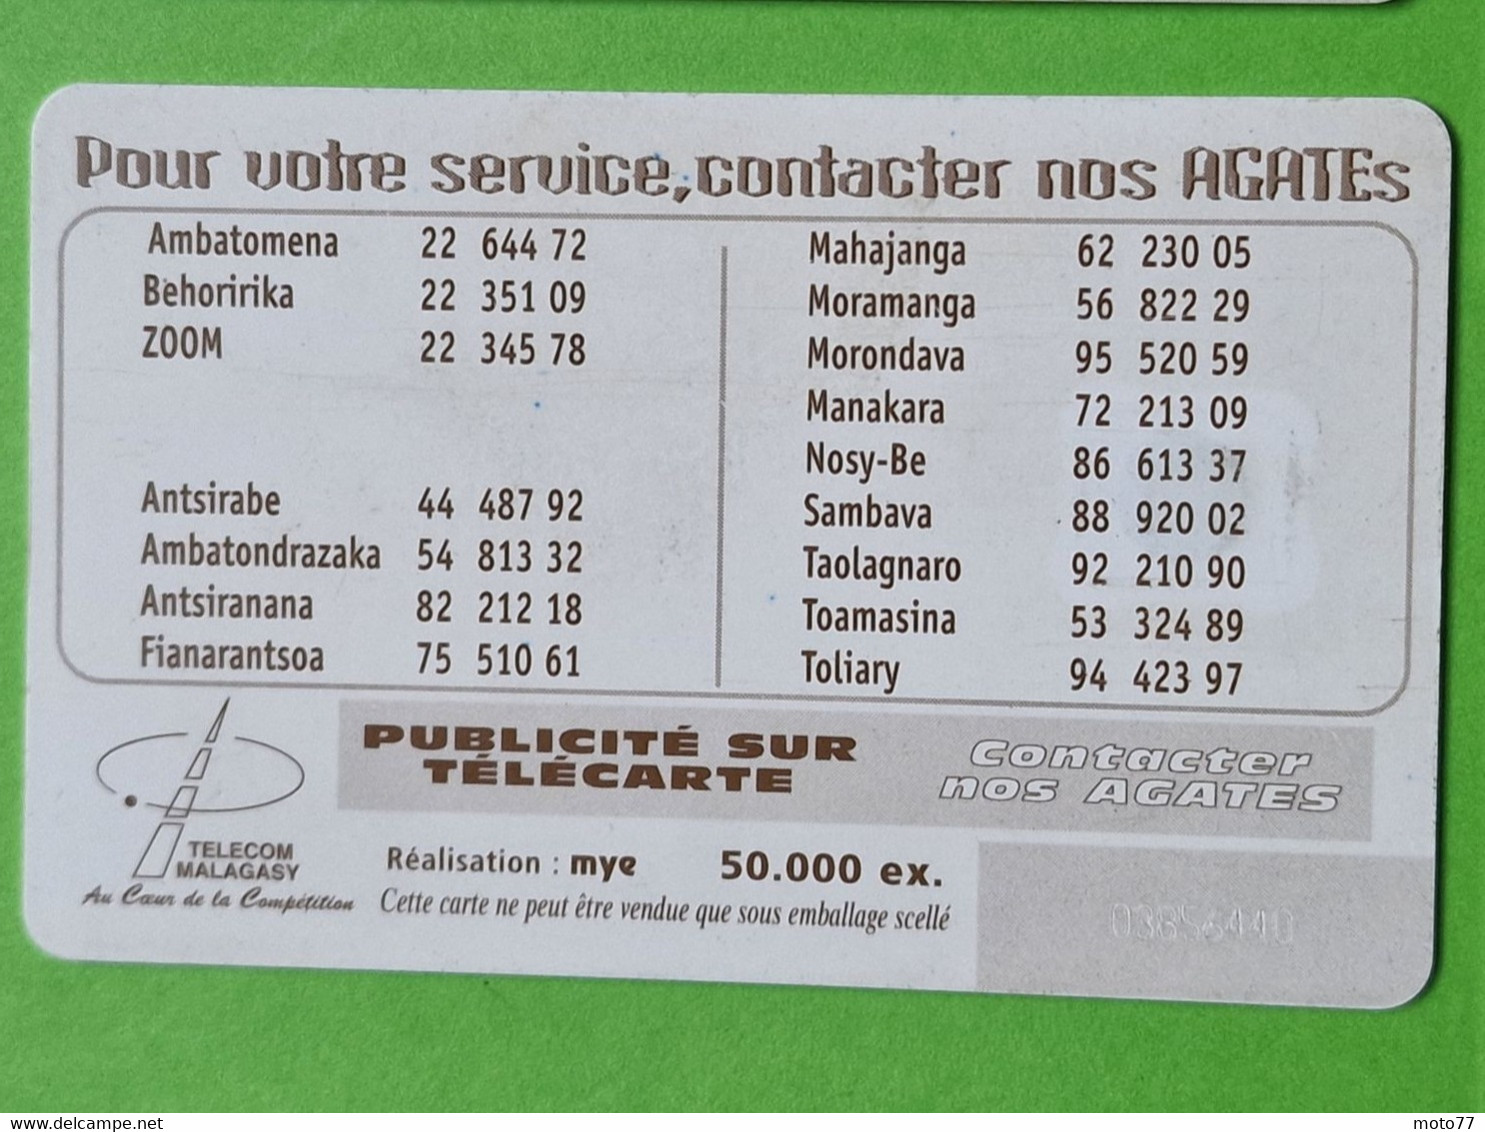 Lot 6 cartes téléphonique MADAGASCAR - VIDE - Télécarte Cabine téléphone - Affaires Stelmad Sat Eclipse 2001 1999